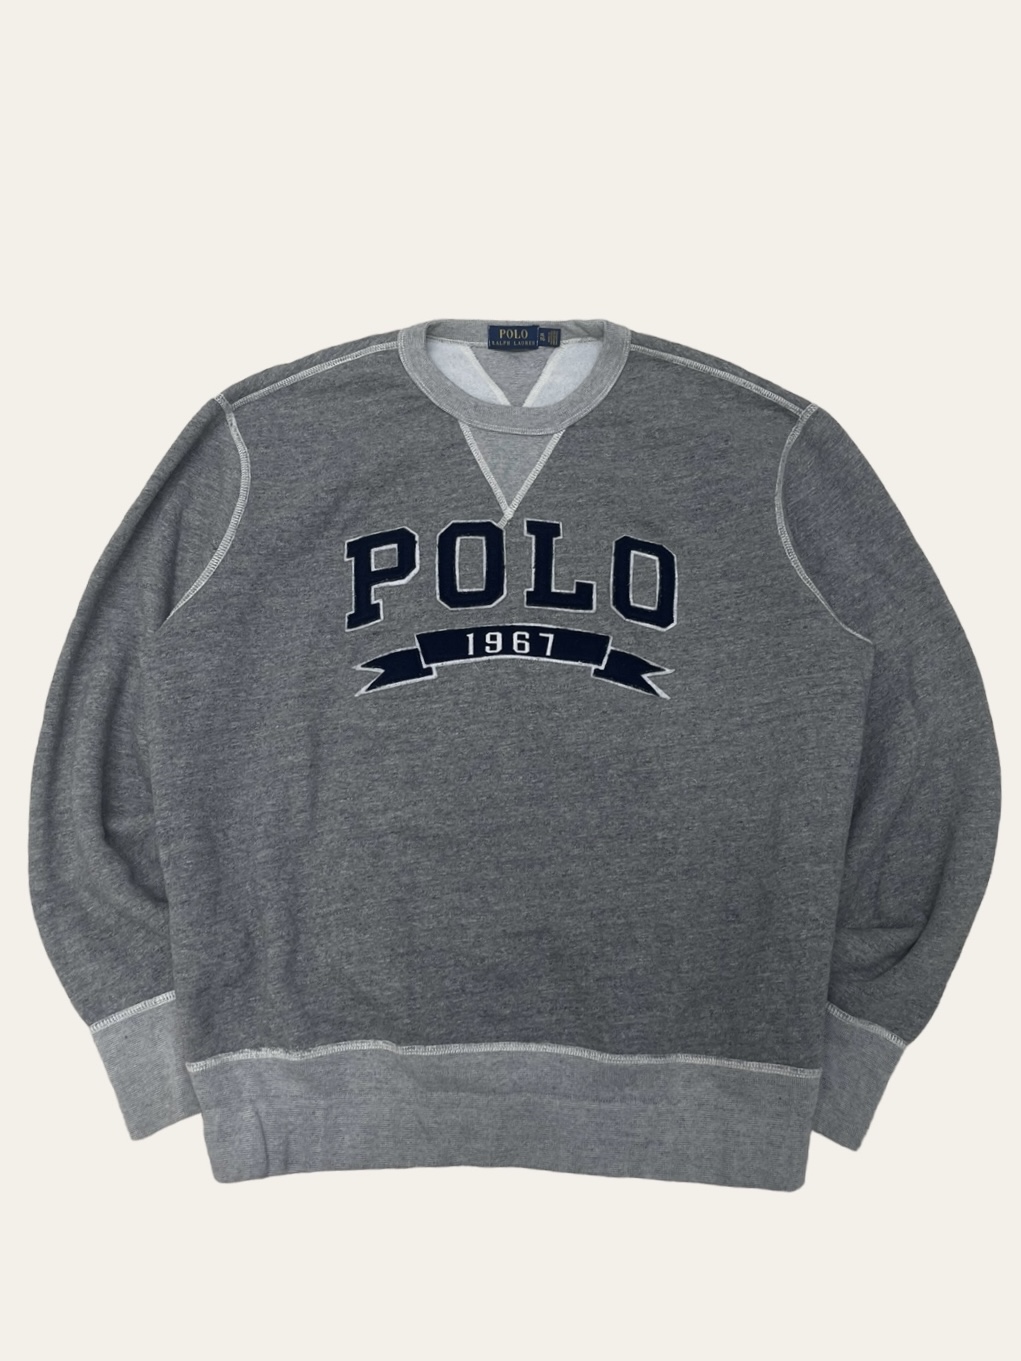 Polo ralph lauren gray spell out sweatshirt XL